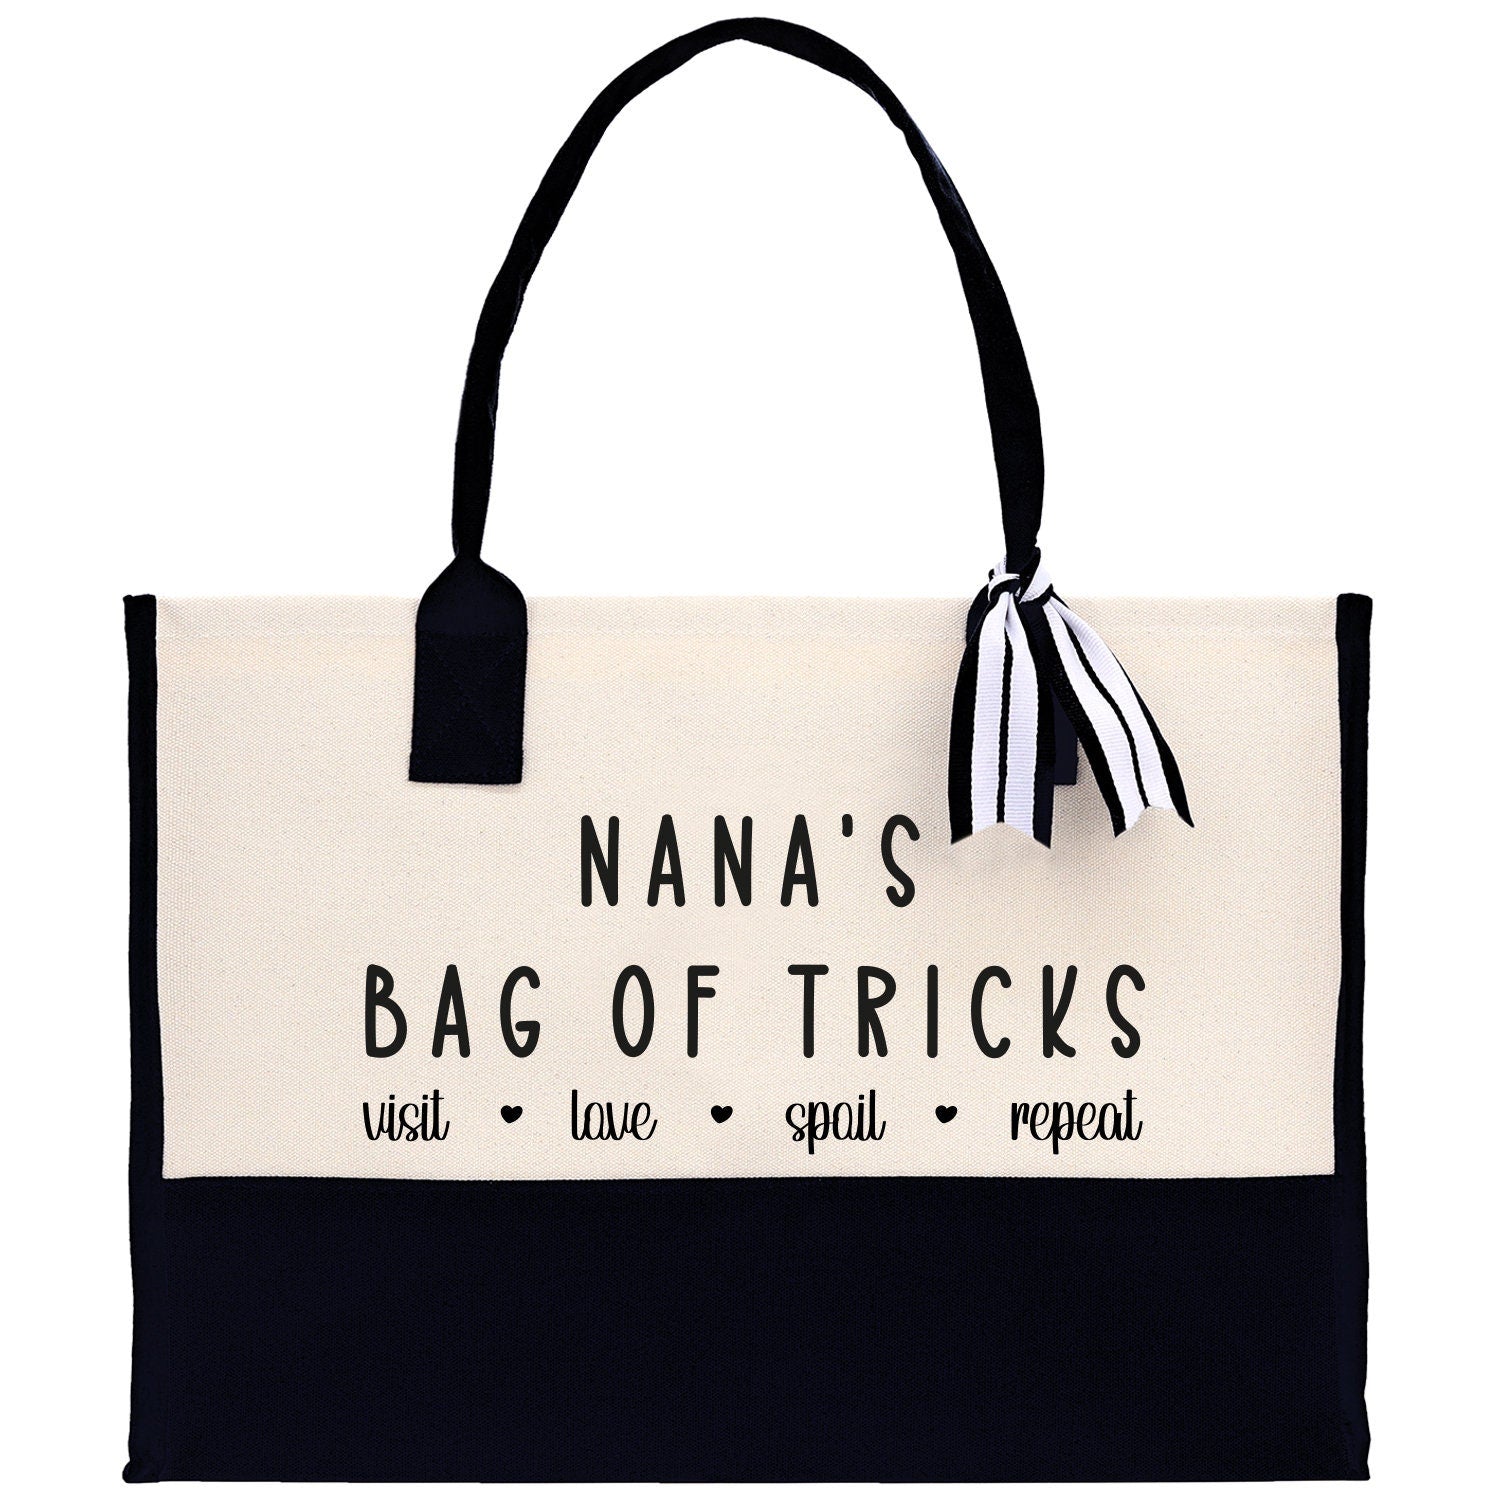 Grandma Tote Bag Grandma's Getaway Bag Grandma Nana Bag Grandma Gift Bag Shopping Bag Mothers Day Gift Live Love Spoil Bag Grandma GM1012